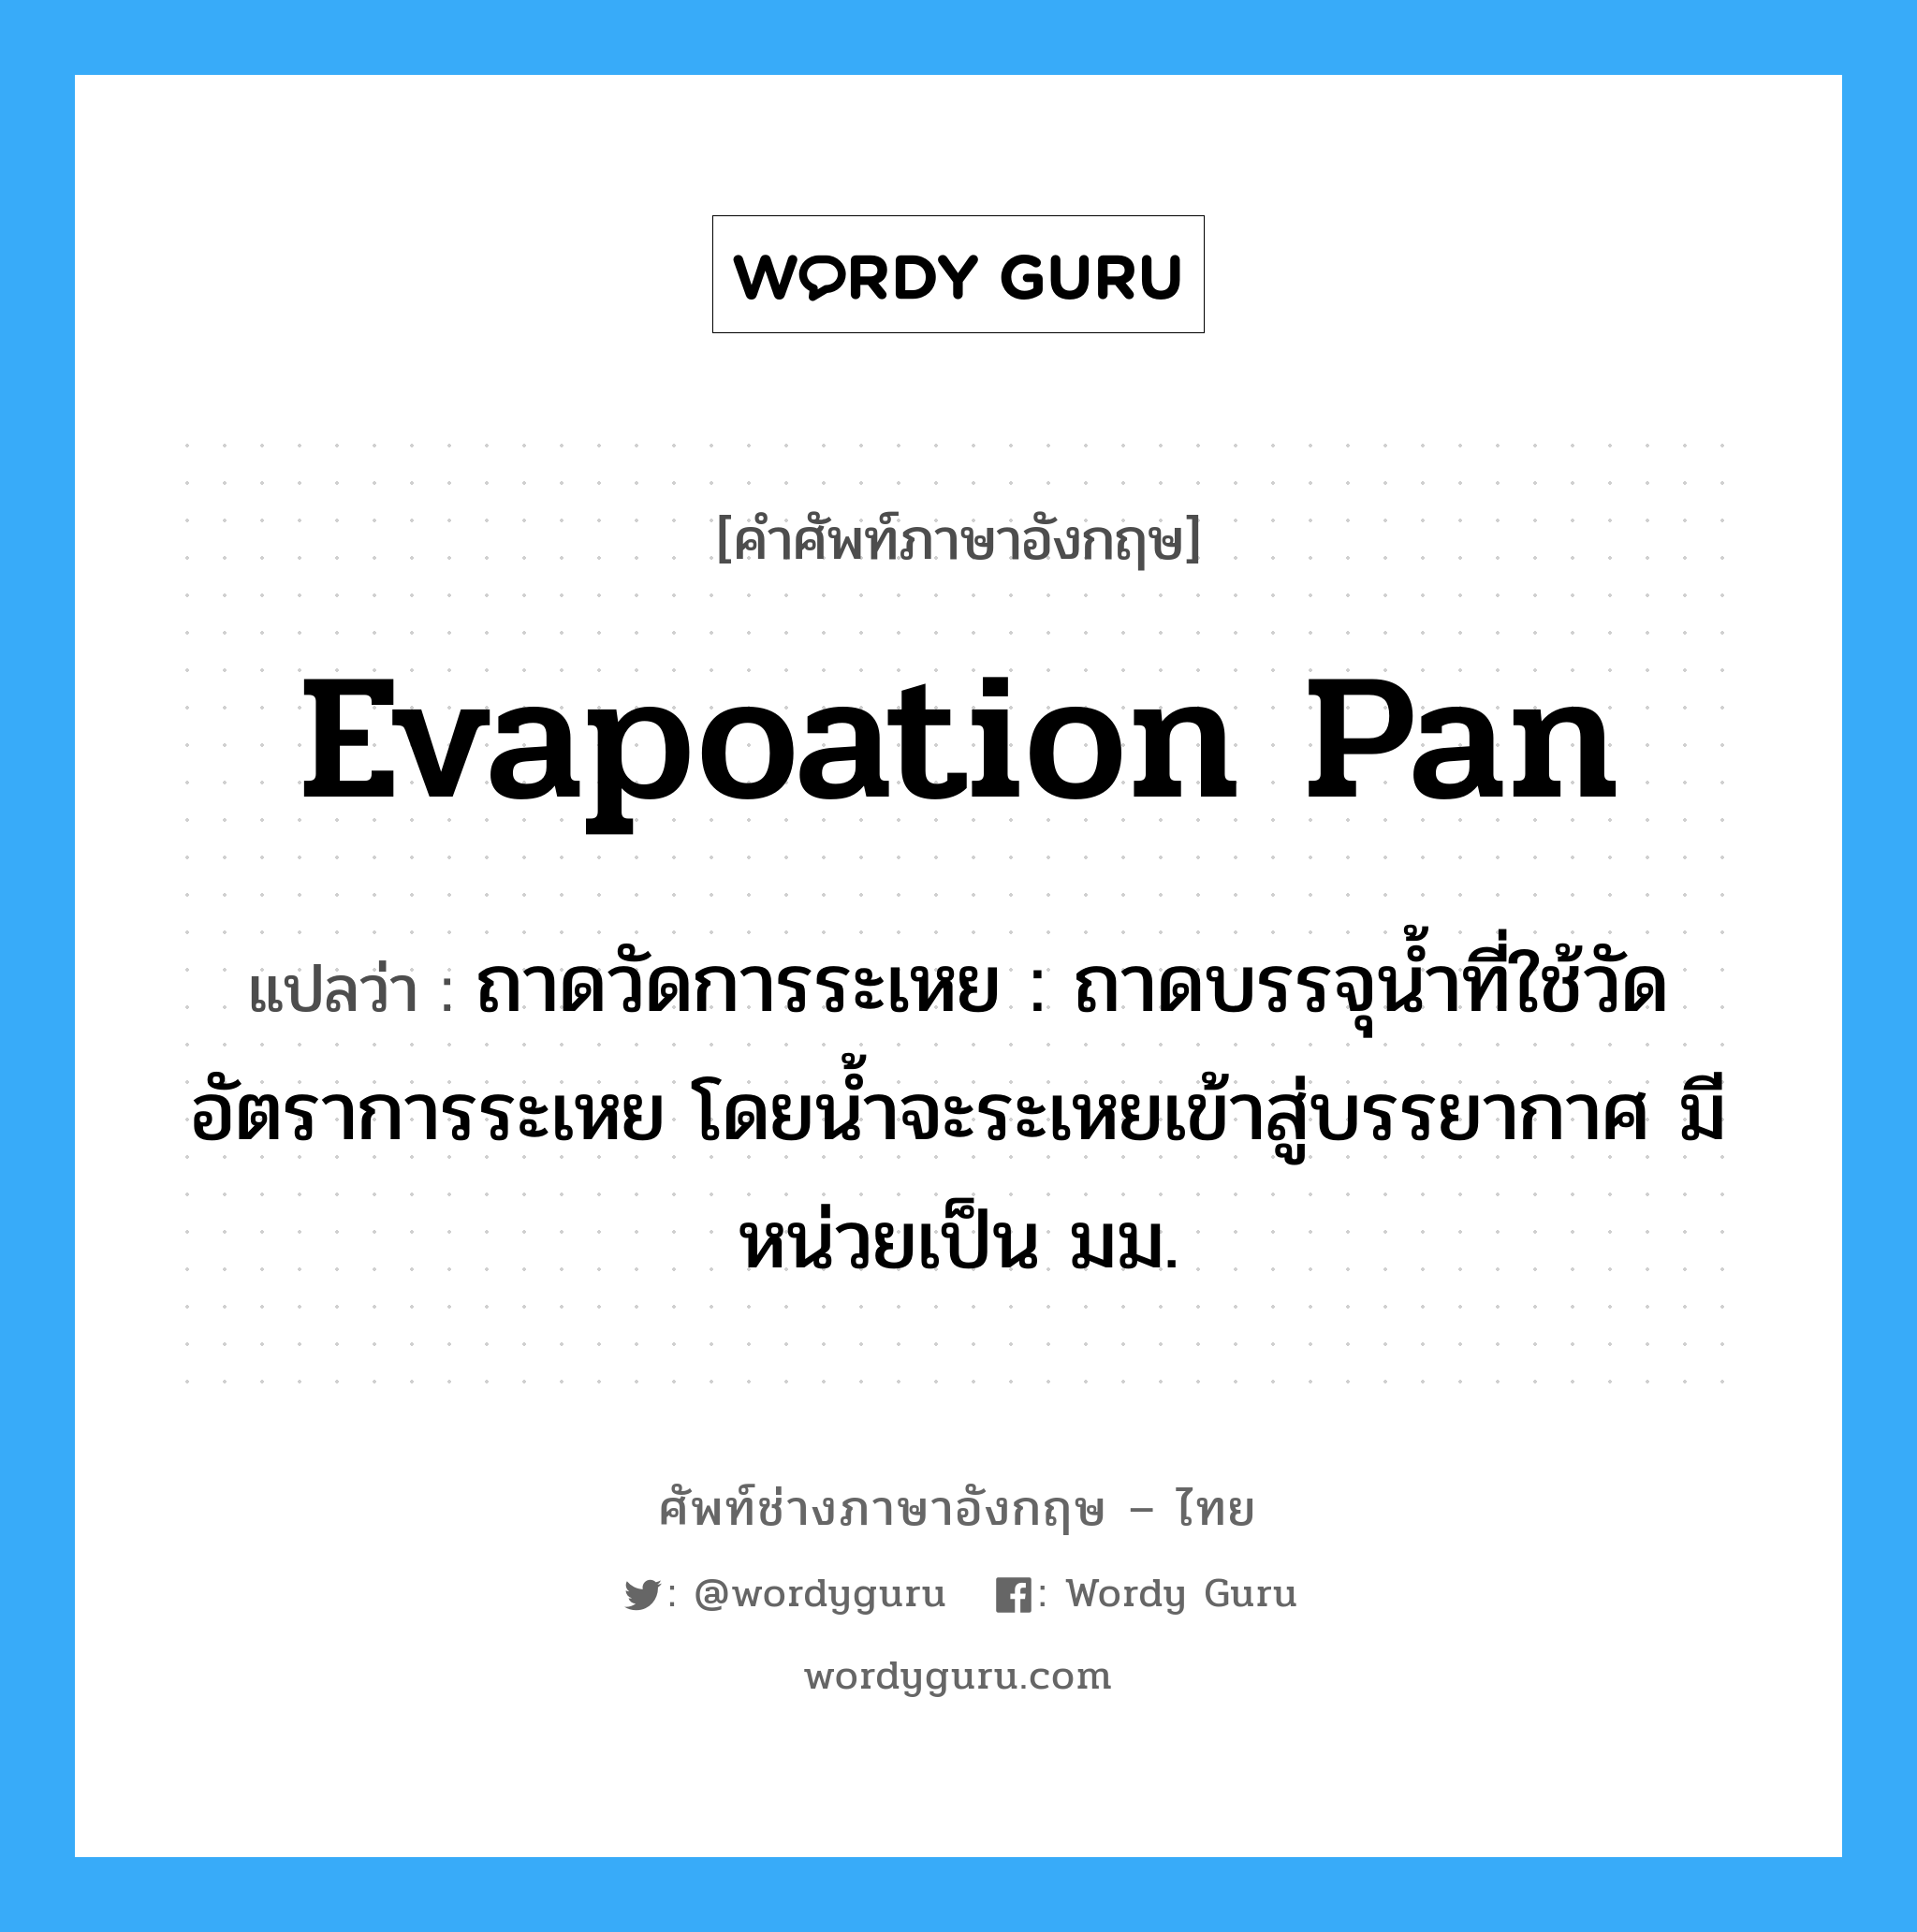 evapoation pan แปลว่า?, คำศัพท์ช่างภาษาอังกฤษ - ไทย evapoation pan คำศัพท์ภาษาอังกฤษ evapoation pan แปลว่า ถาดวัดการระเหย : ถาดบรรจุน้ำที่ใช้วัดอัตราการระเหย โดยน้ำจะระเหยเข้าสู่บรรยากาศ มีหน่วยเป็น มม.